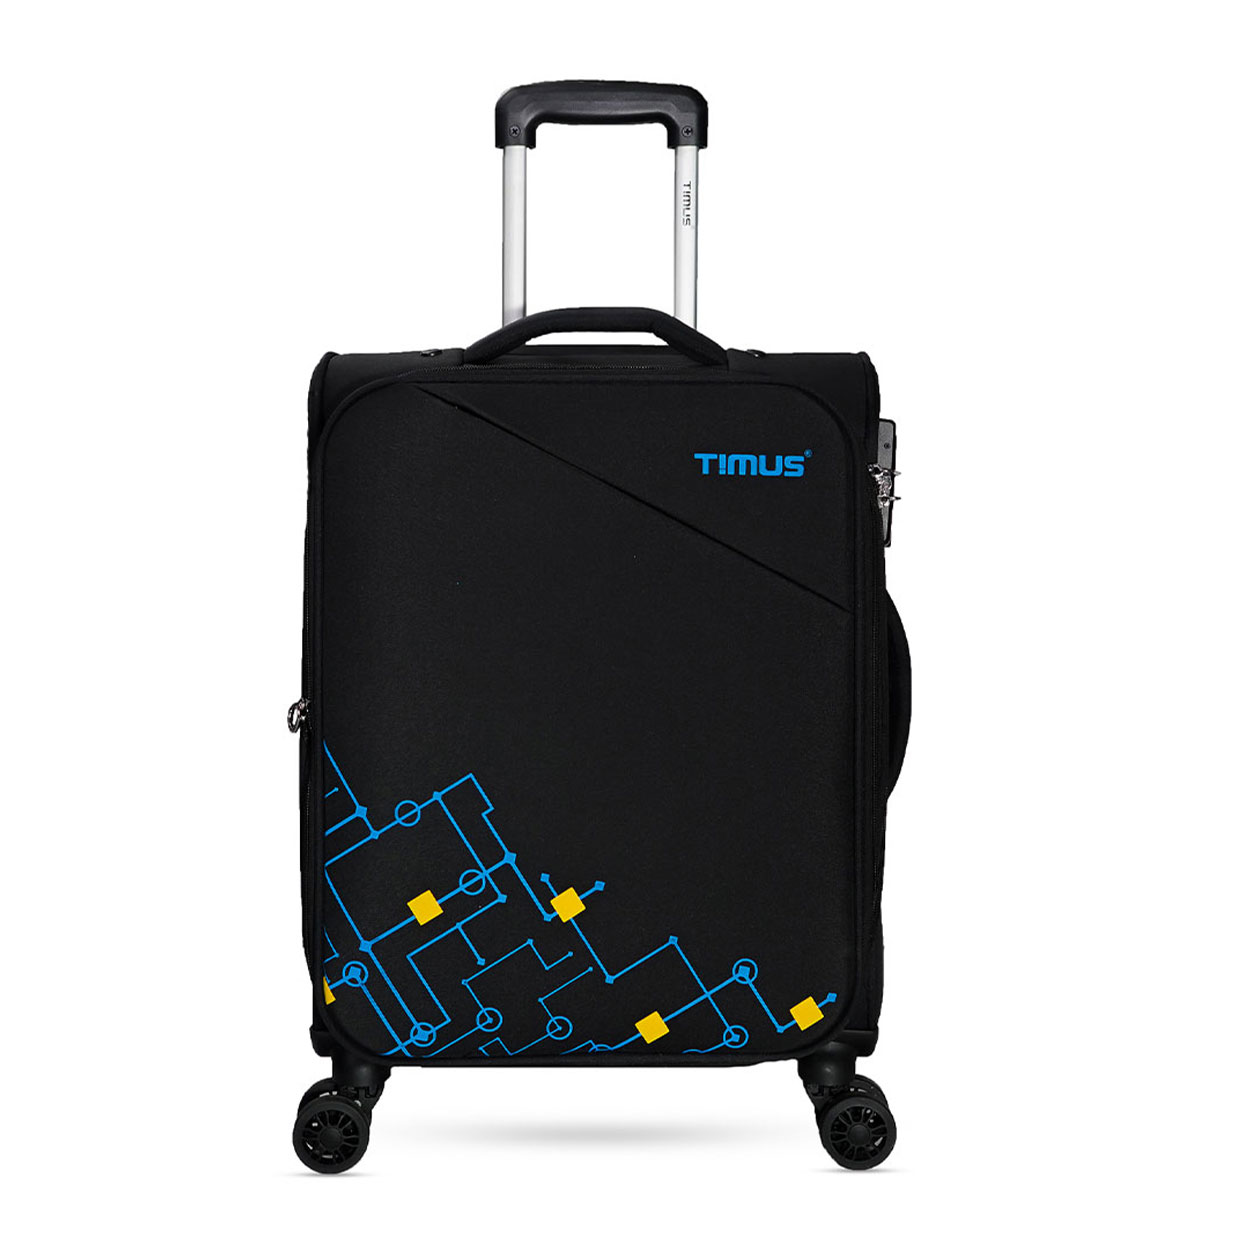 Timus-Lifestyle-Luggage-Soft-Luggage-trolley-bag-Flash-Plus-Luggage-Trolley-Bag-58cm-Black-1